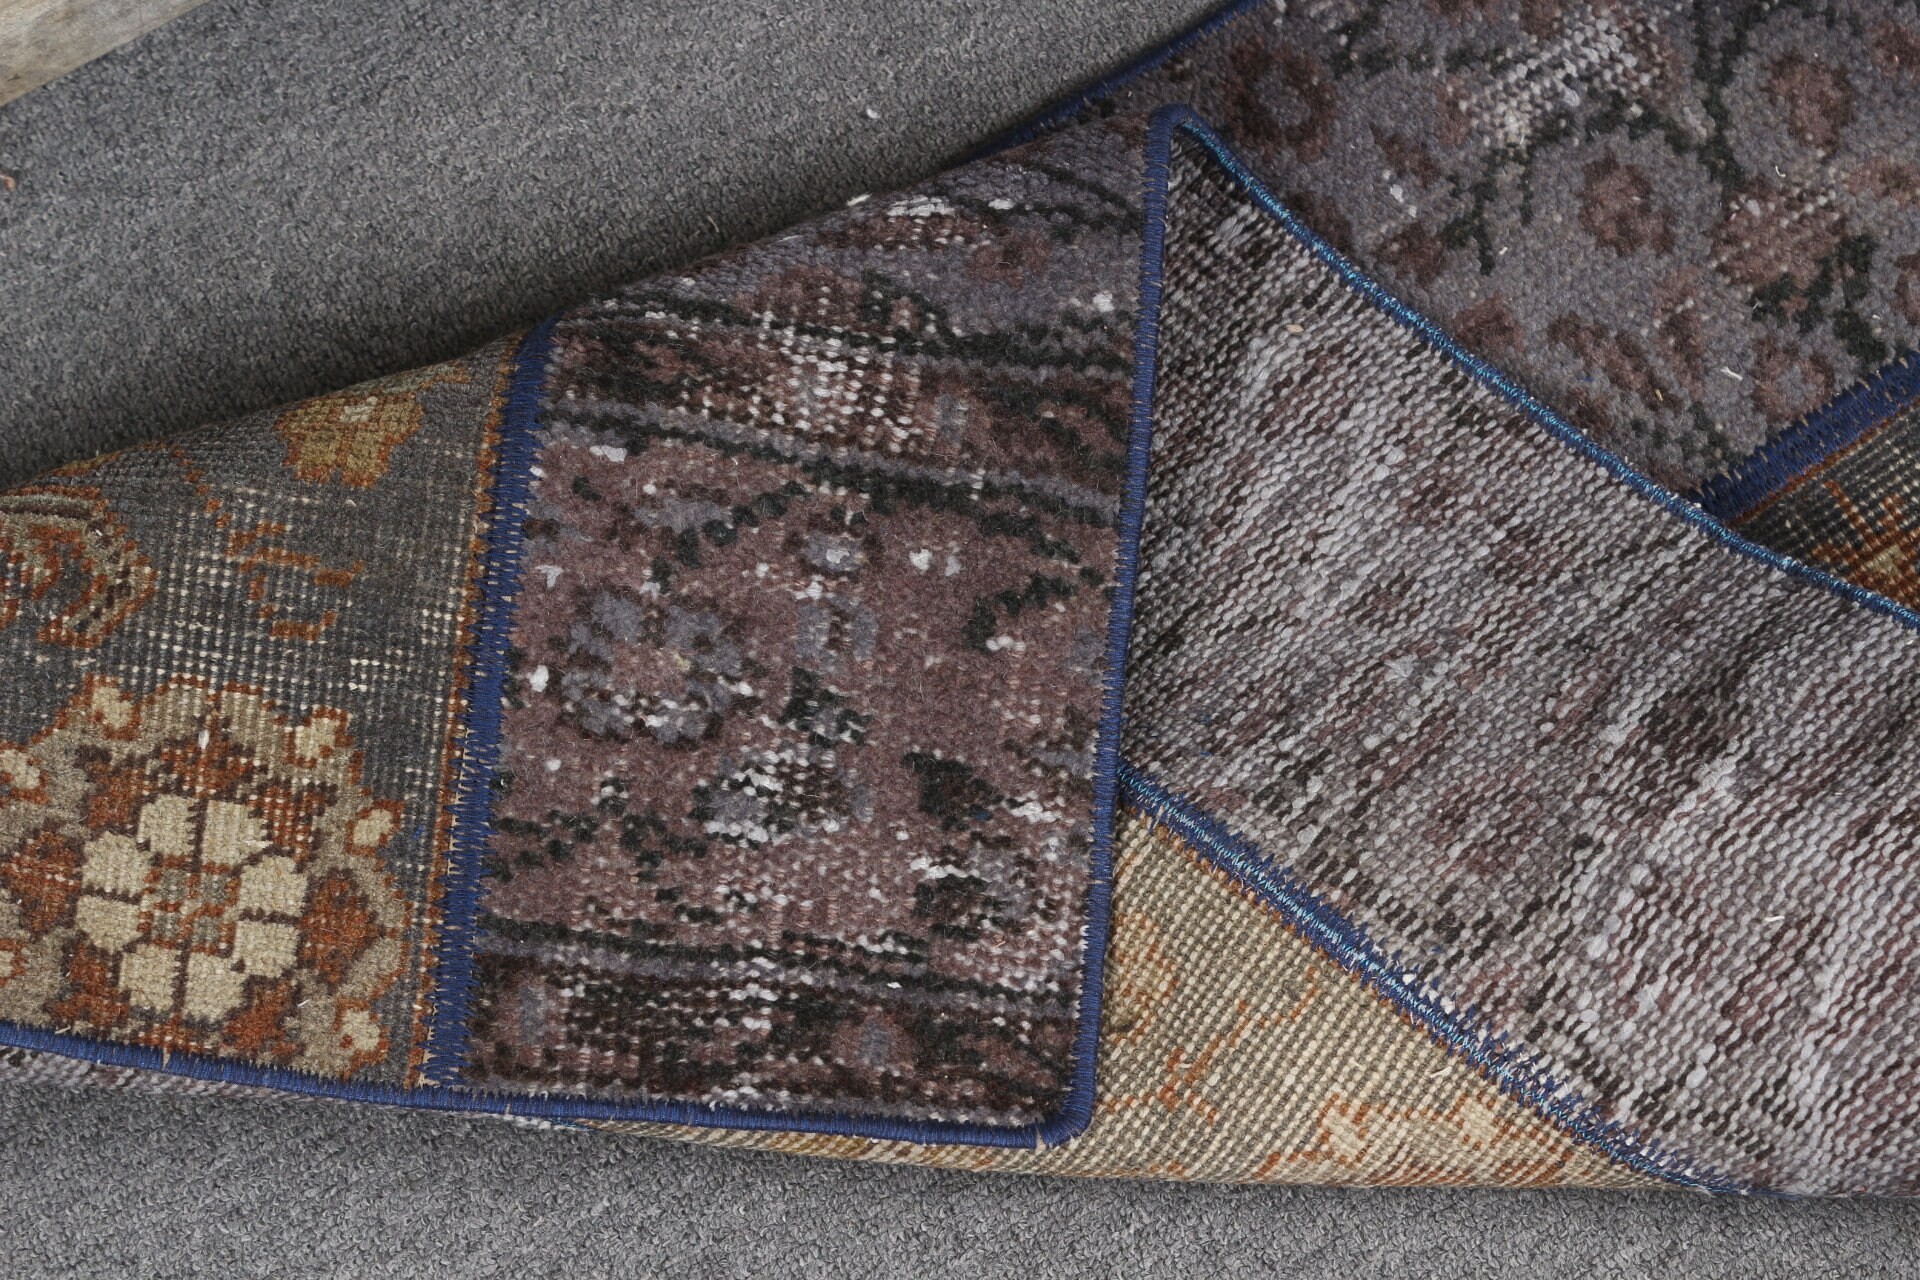 Anatolian Rugs, Gray  1.8x3.2 ft Small Rugs, Vintage Rug, Turkish Rug, Floor Rugs, Outdoor Rug, Car Mat Rug, Bathroom Rug